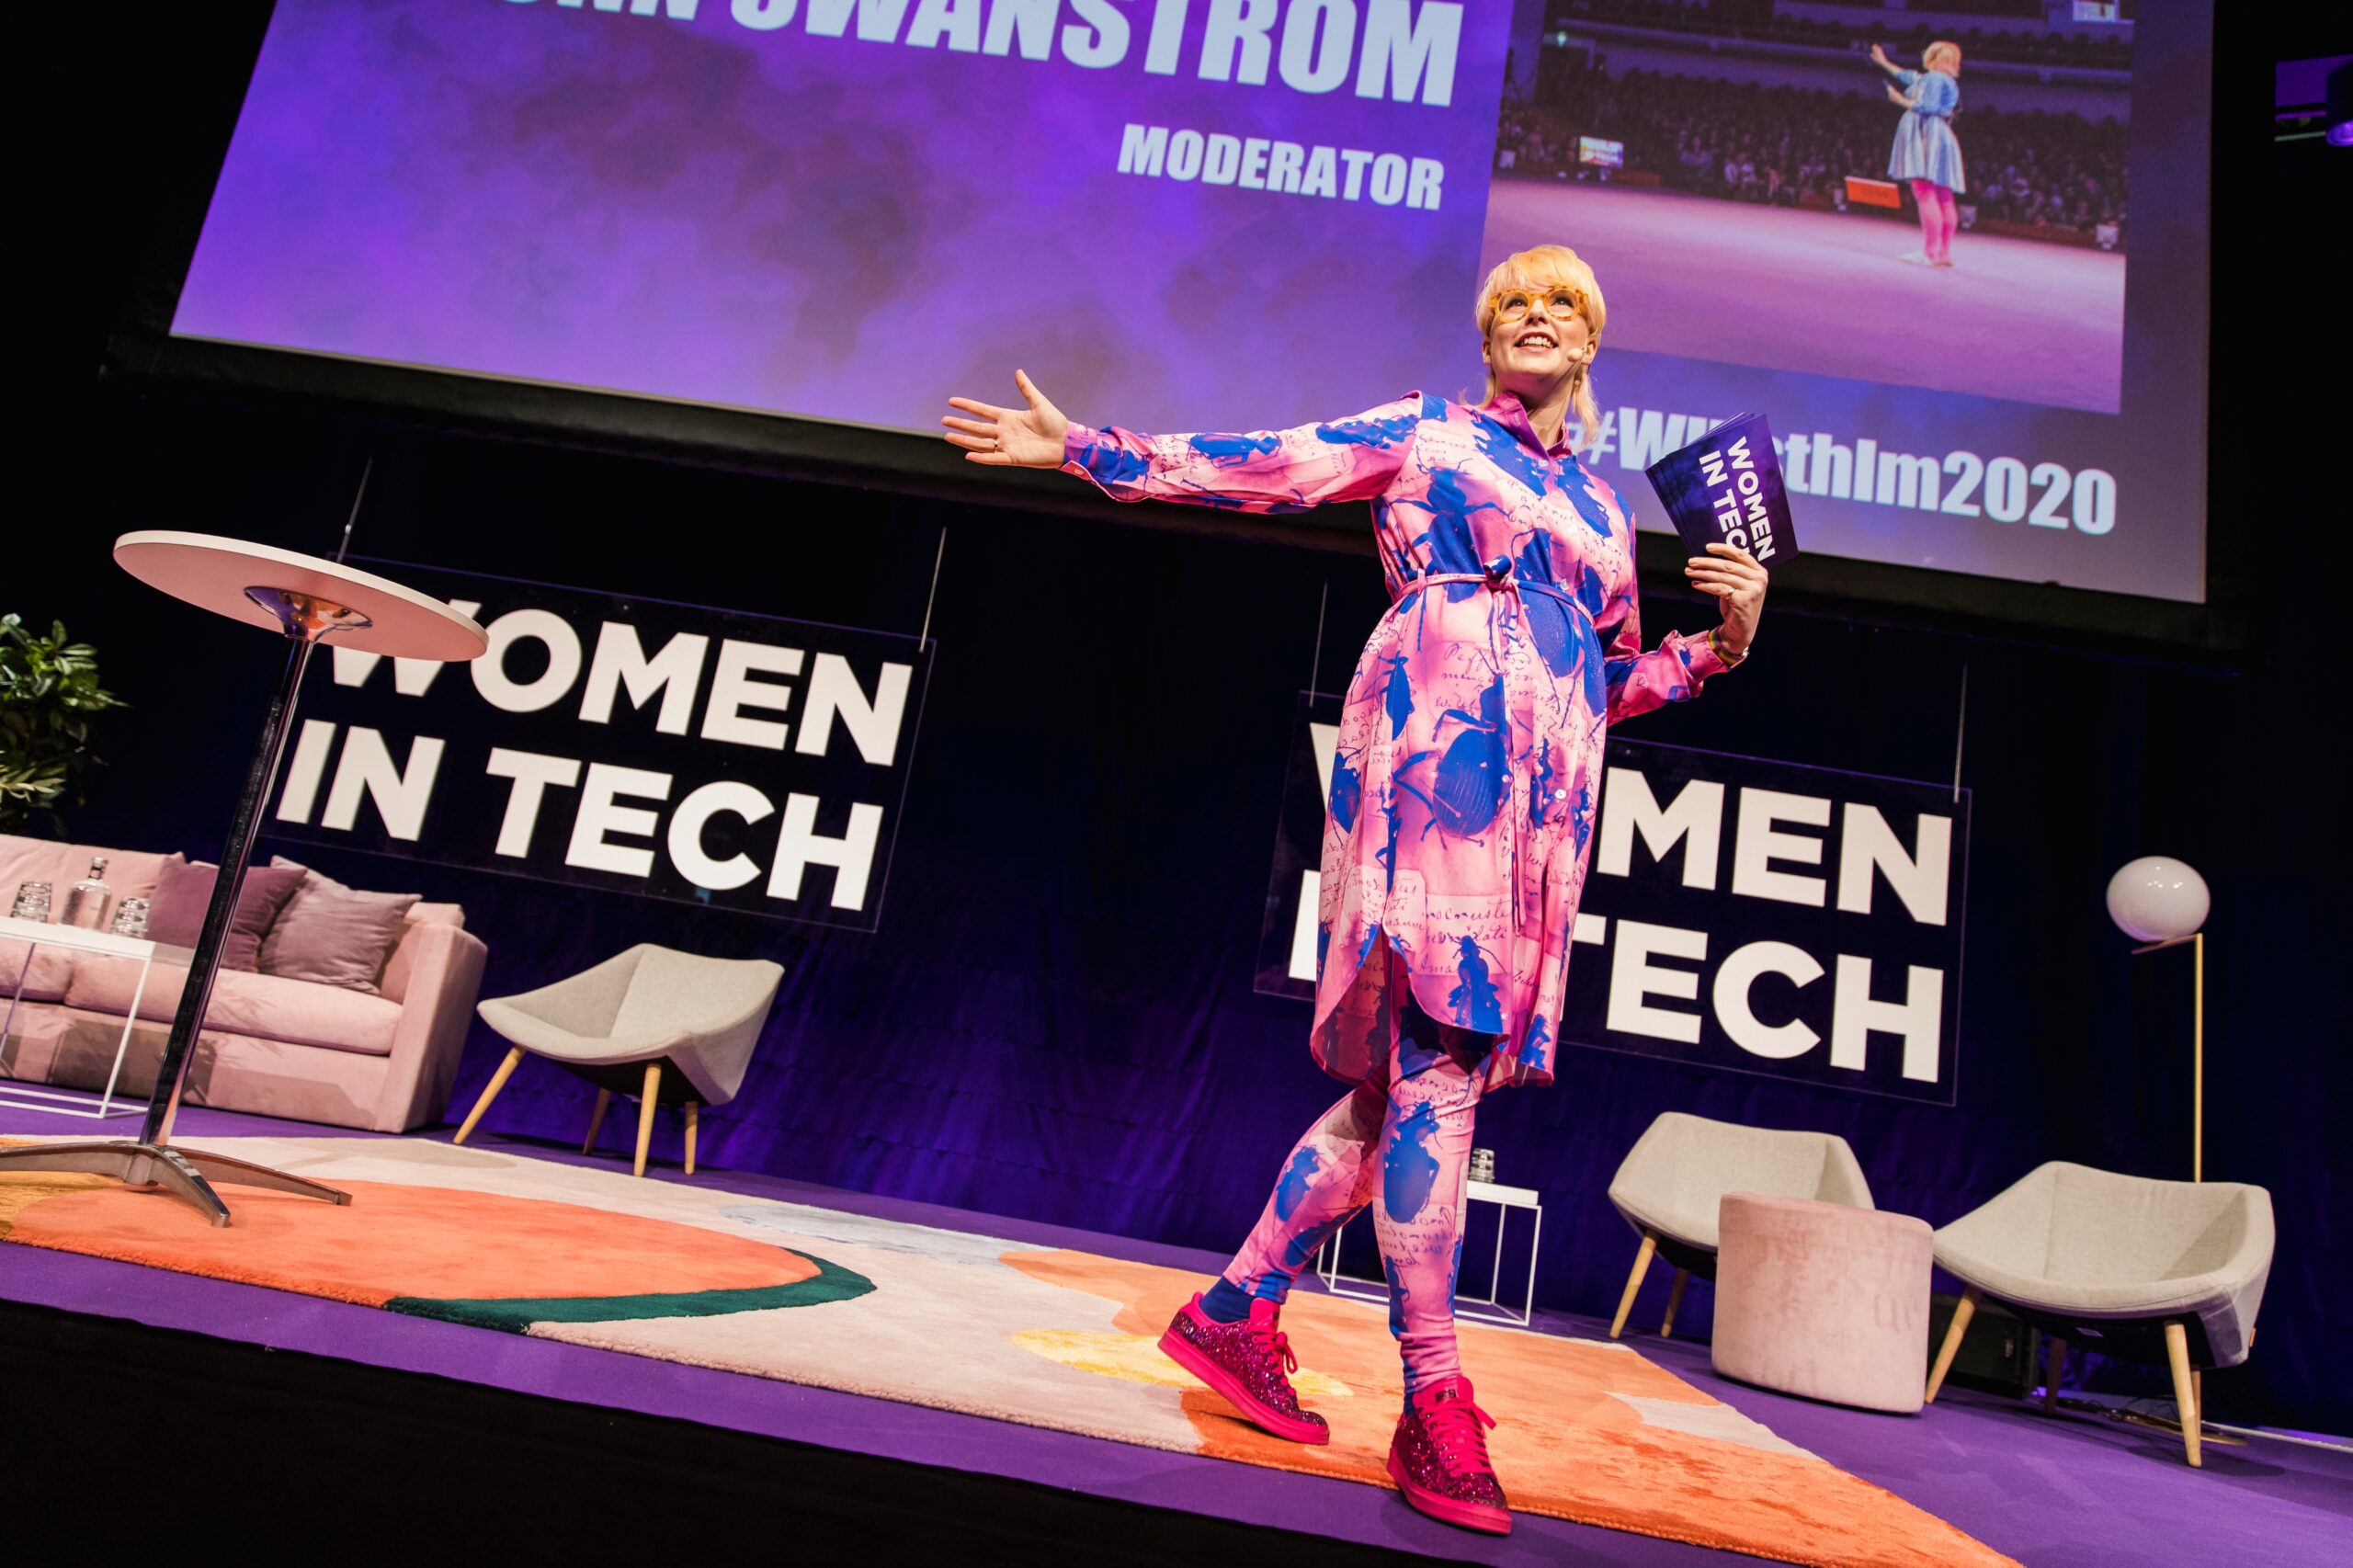 Women in Techs digitala konferens hyllar kraften i att ständigt hitta nya vägar